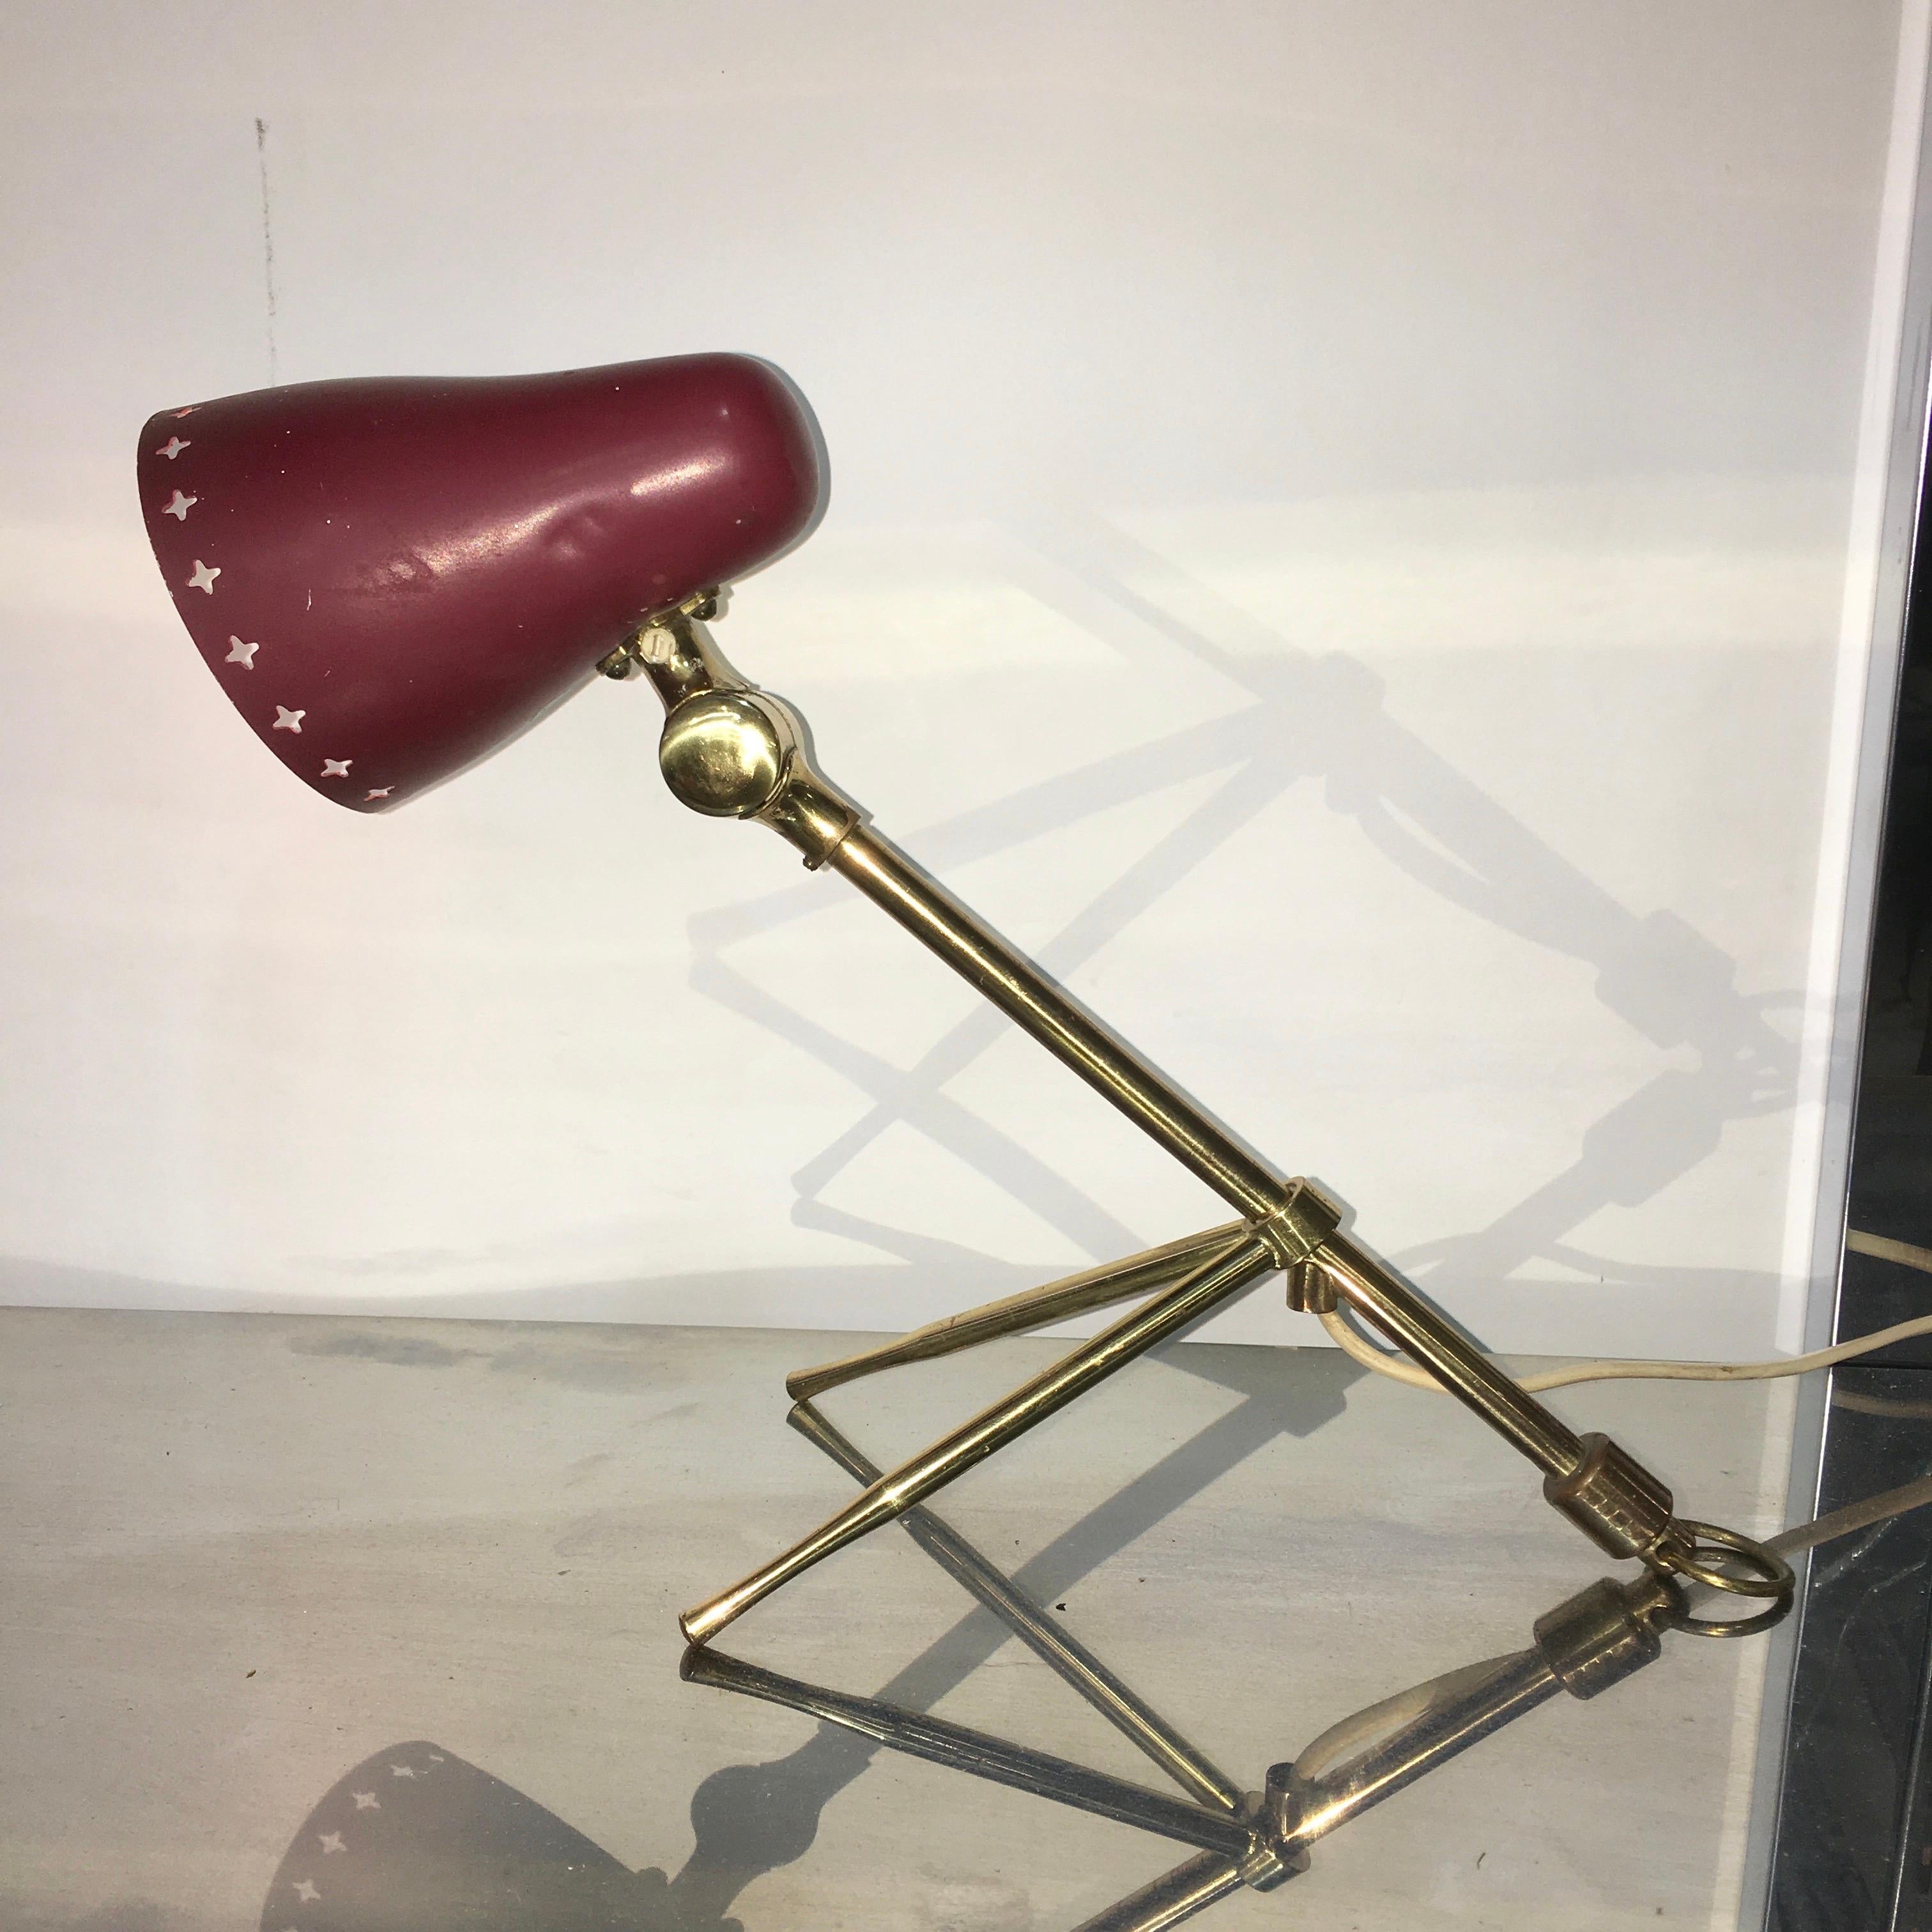 Une autre charmante lampe suédoise anthropomorphe du début des années 1950, qui peut être accrochée au mur ou posée sur un bureau ou une table. Abat-jour entièrement articulé. Accepte une seule ampoule candélabre E14 ou E12 jusqu'à 60 watts. Souvent